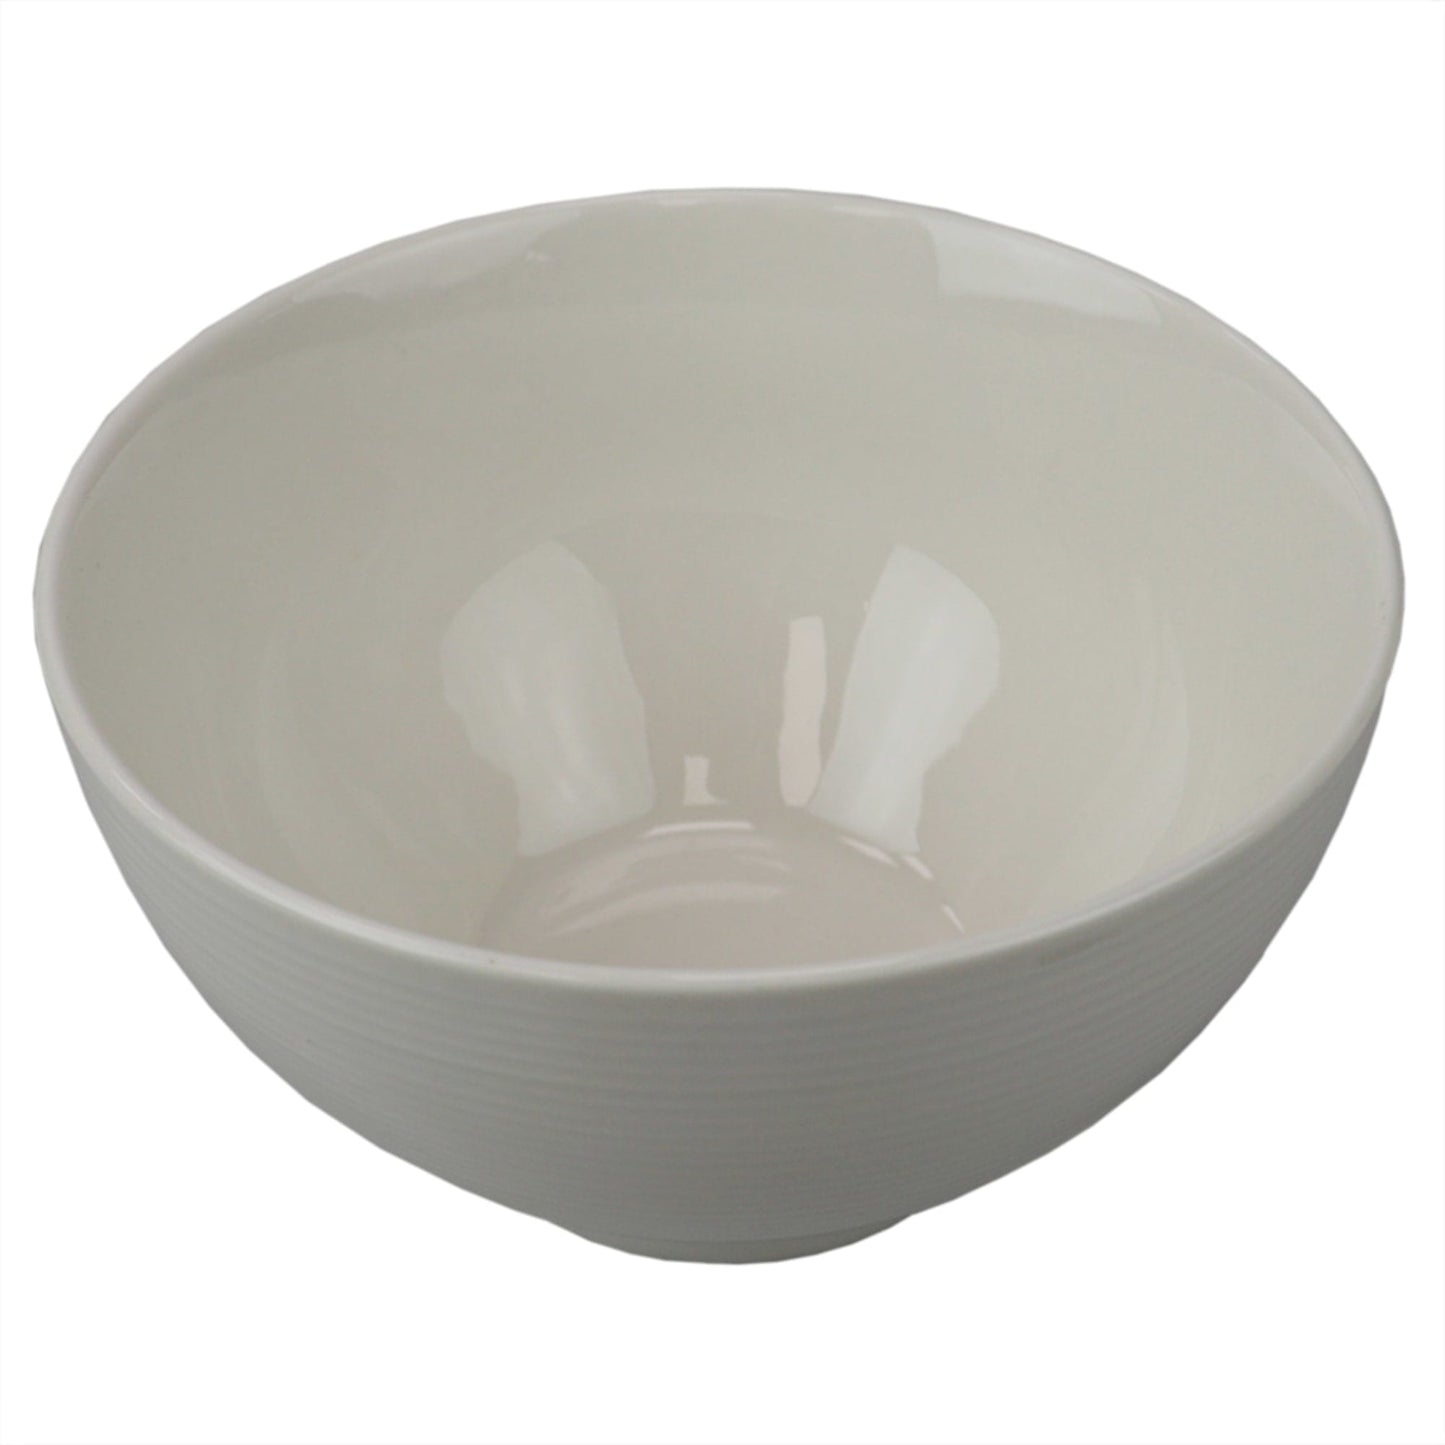 Embossed Thread  6" Ceramic Bowl, White